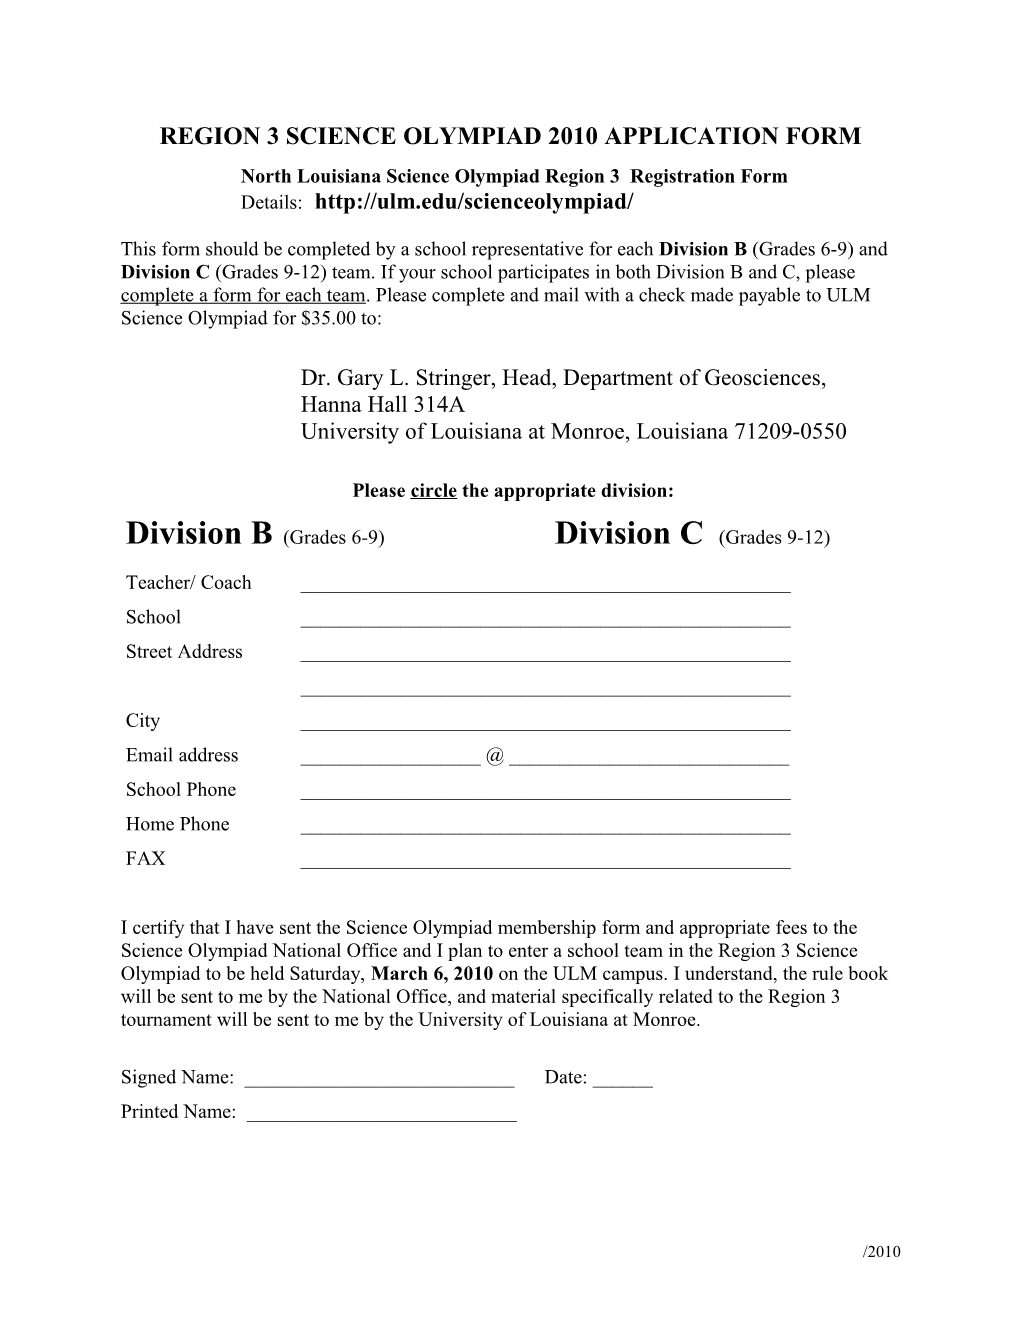 Region 3 Science Olympiad 2007 Application Form